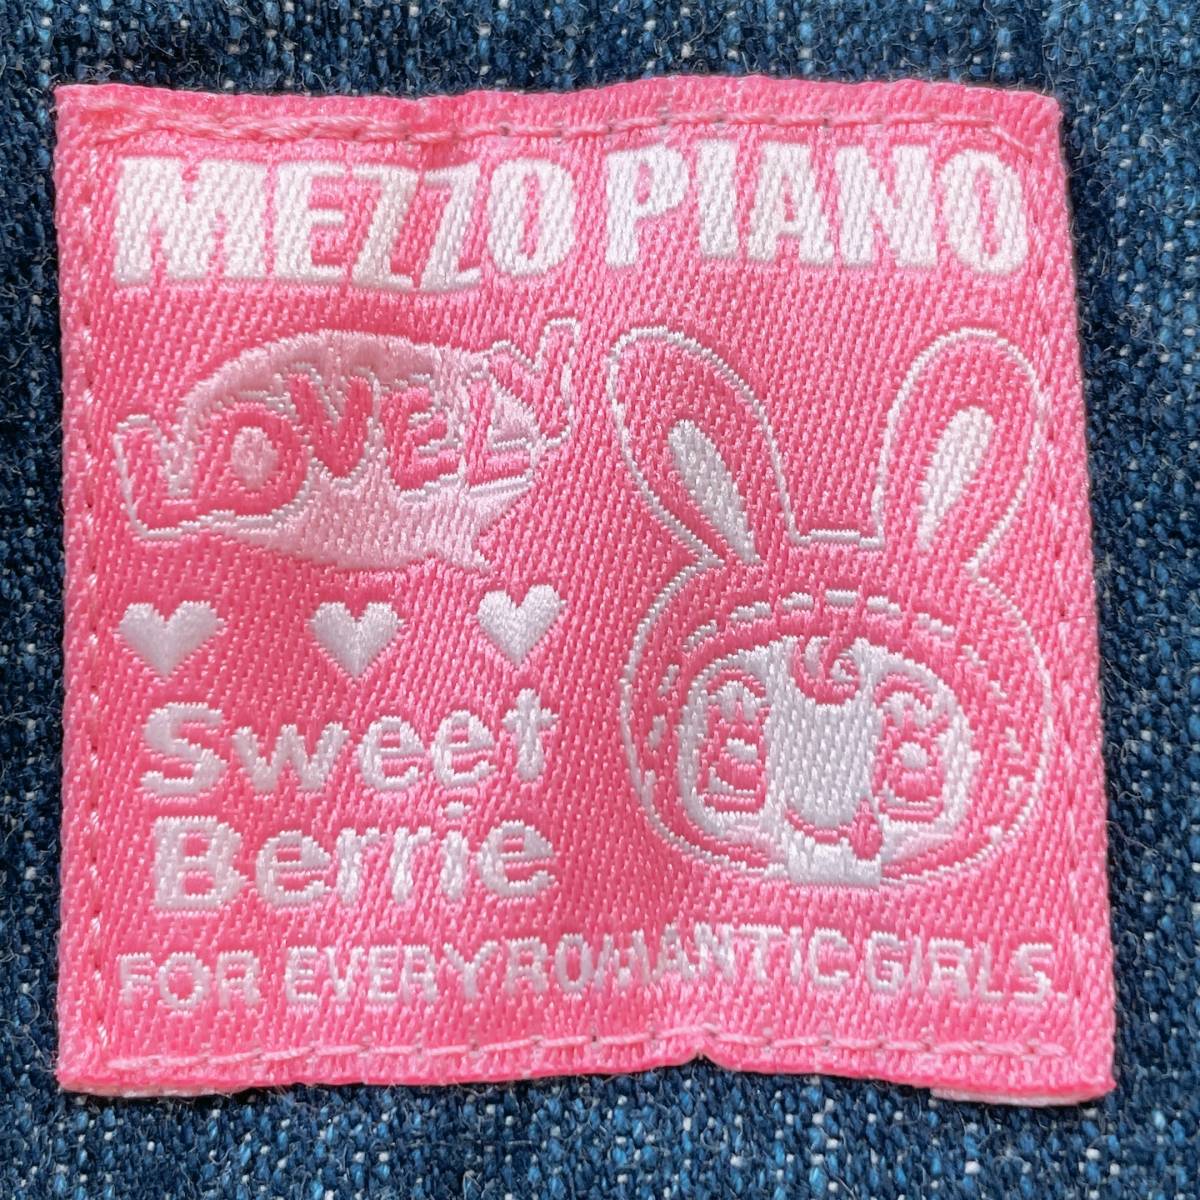 キッズ135cm ガールズ MezzoPiano オーバーオール ブルー 青 ピンク 良品 かわいい 刺繍 イラスト 女の子用 メゾピアノ 【23524】